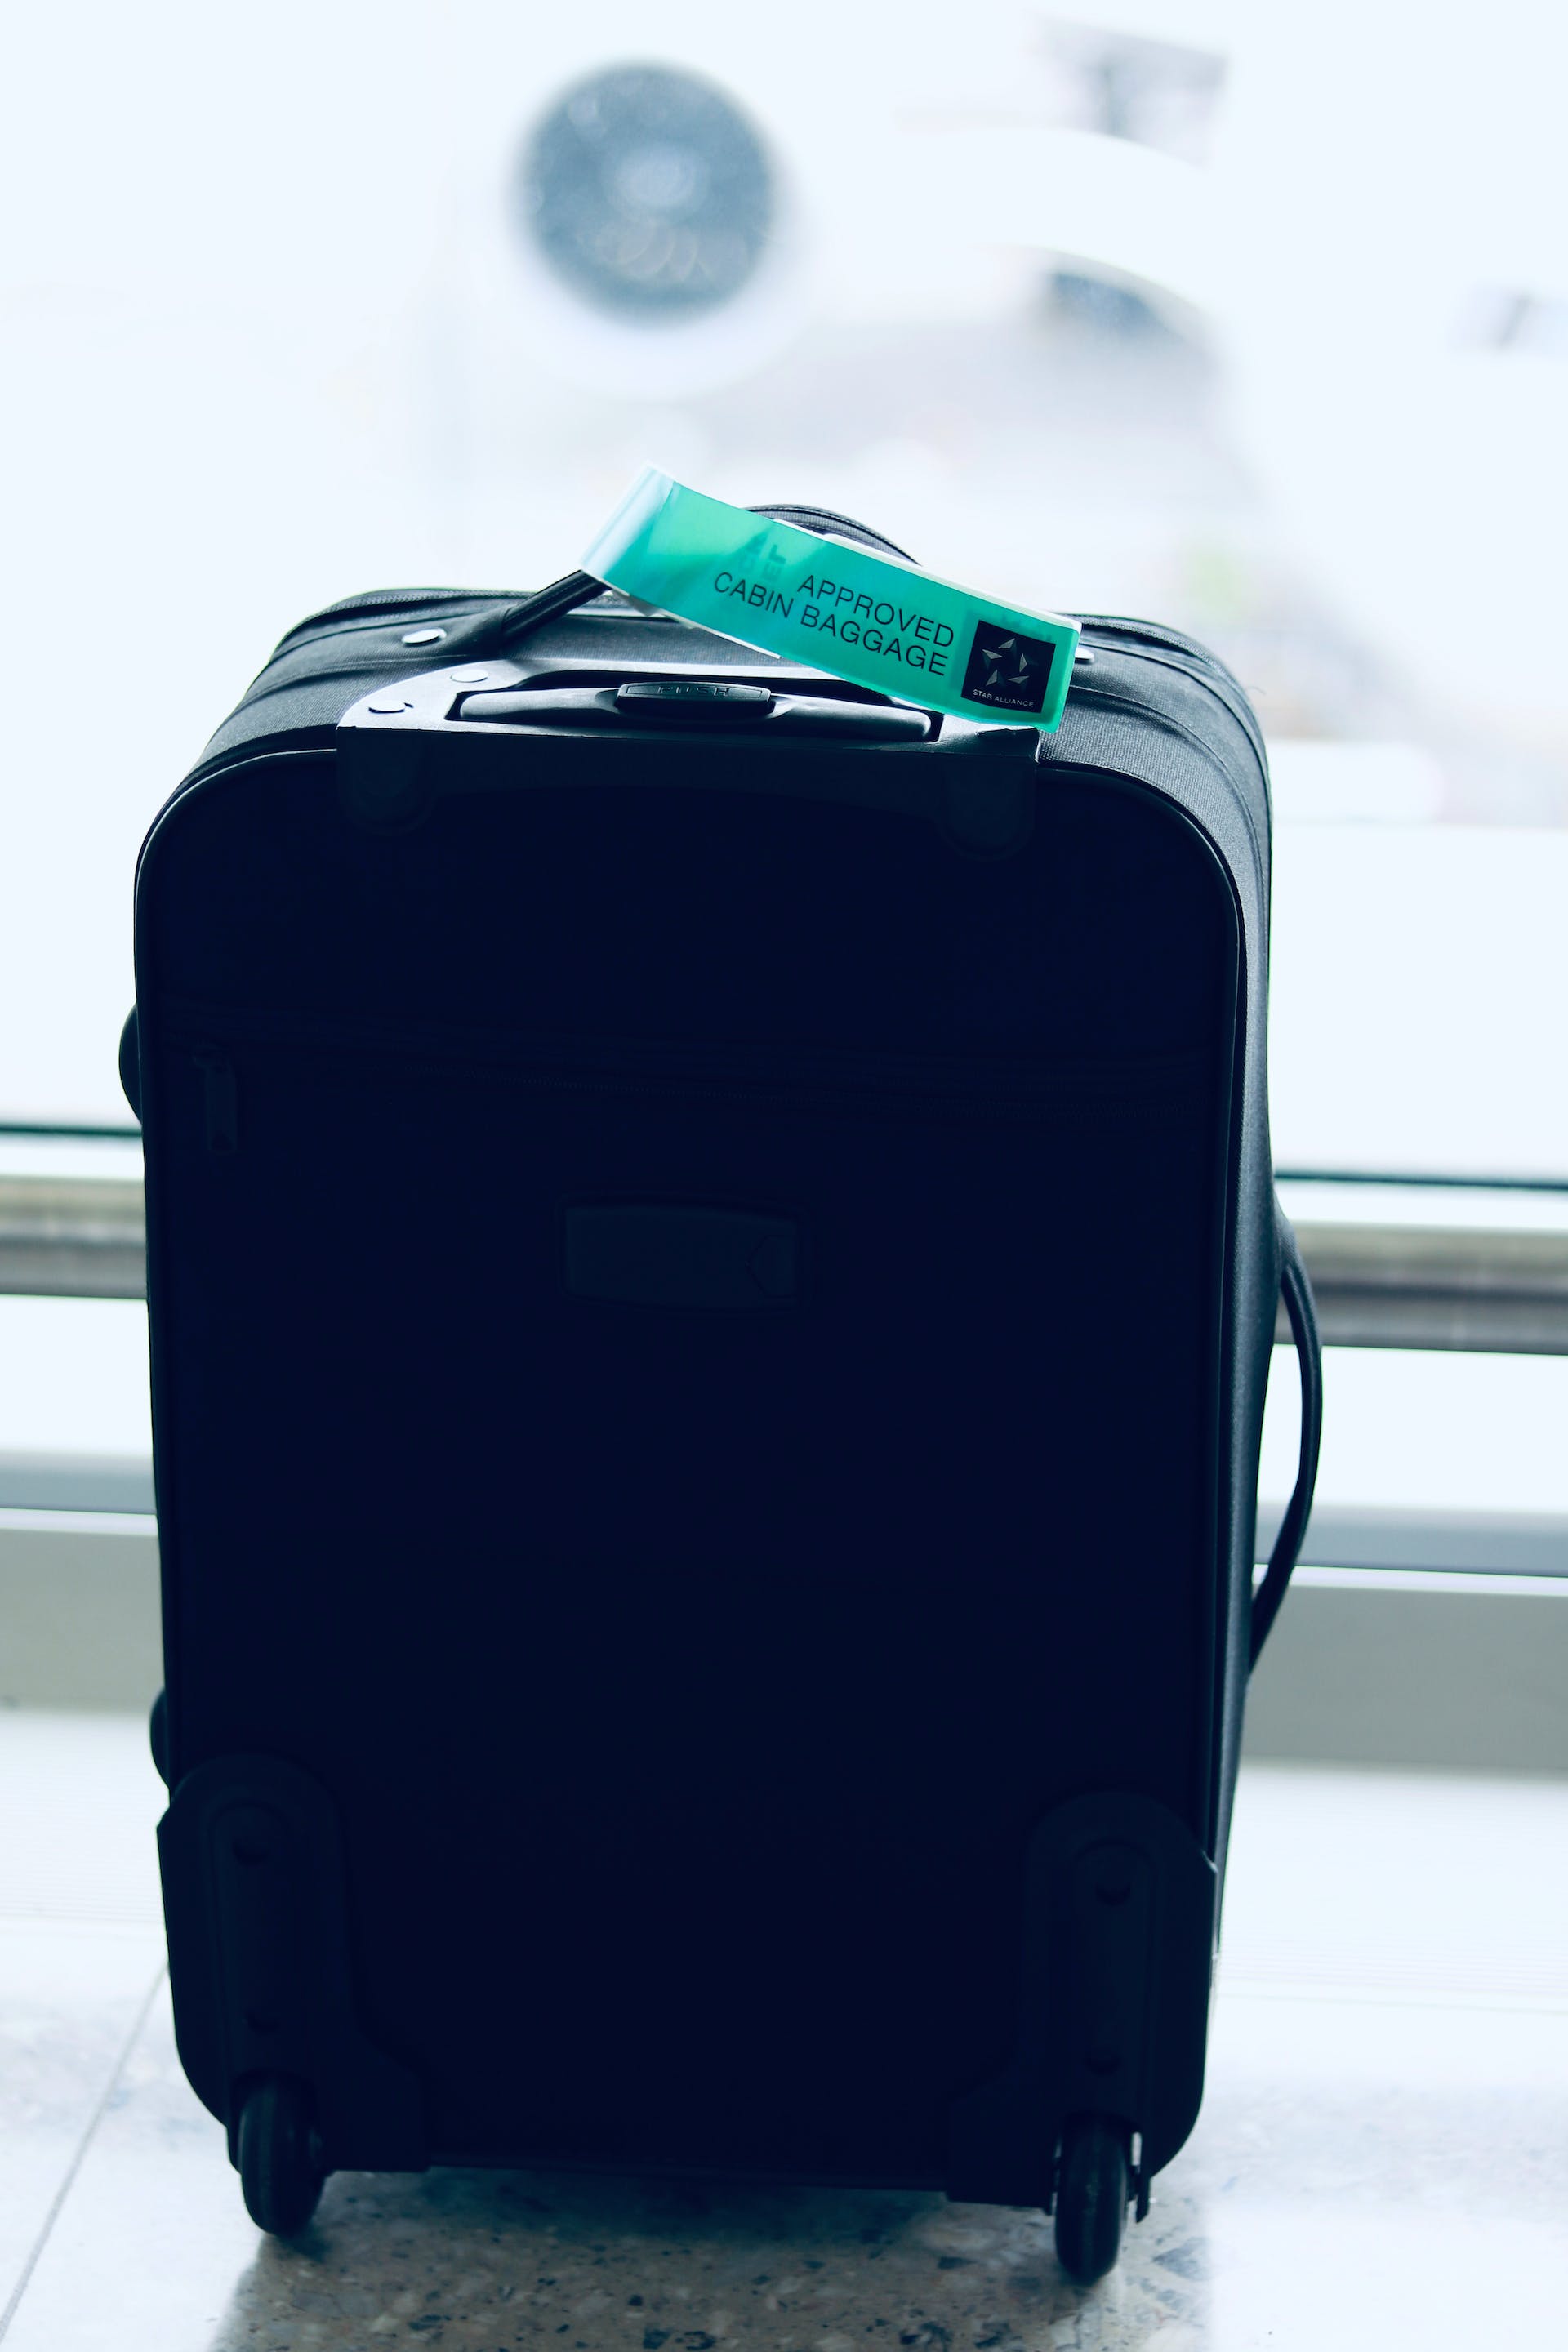 A suitcase | Source: Pexels